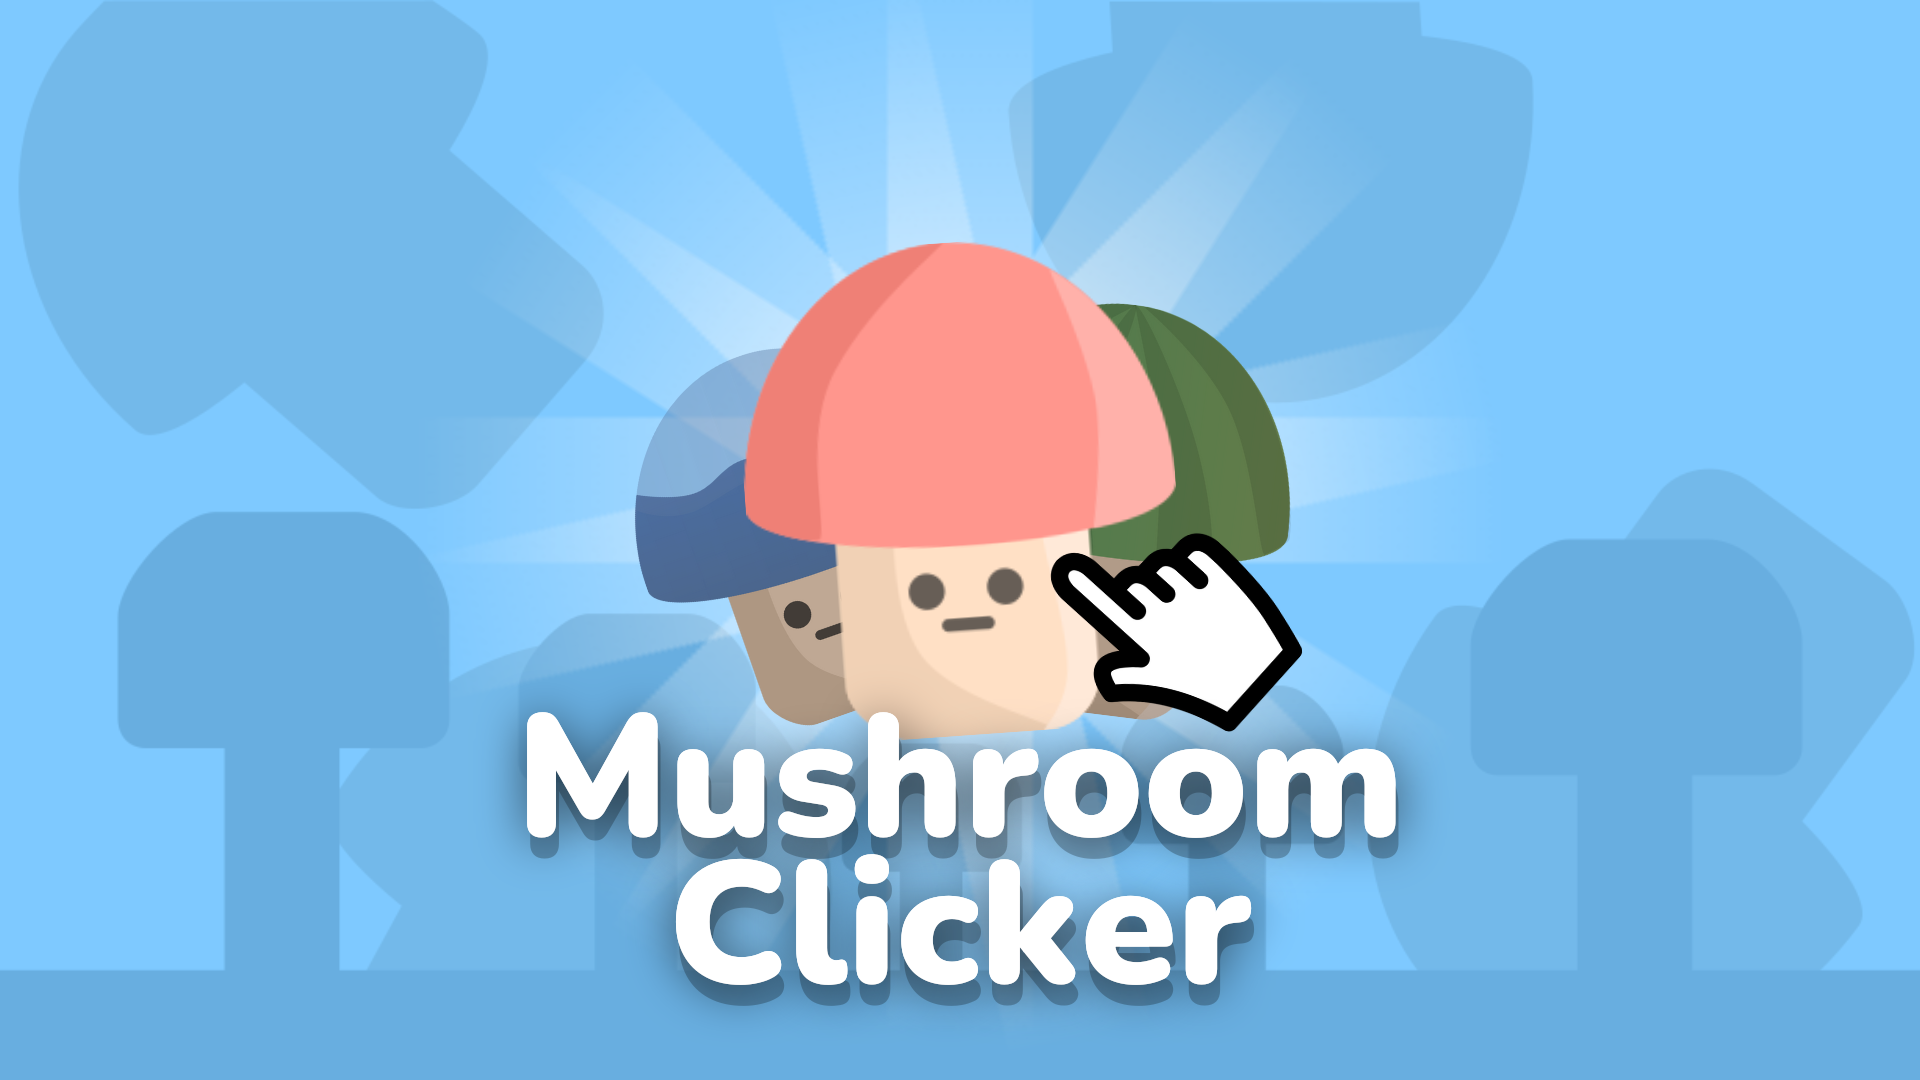 Mushroom Clicker Sequel